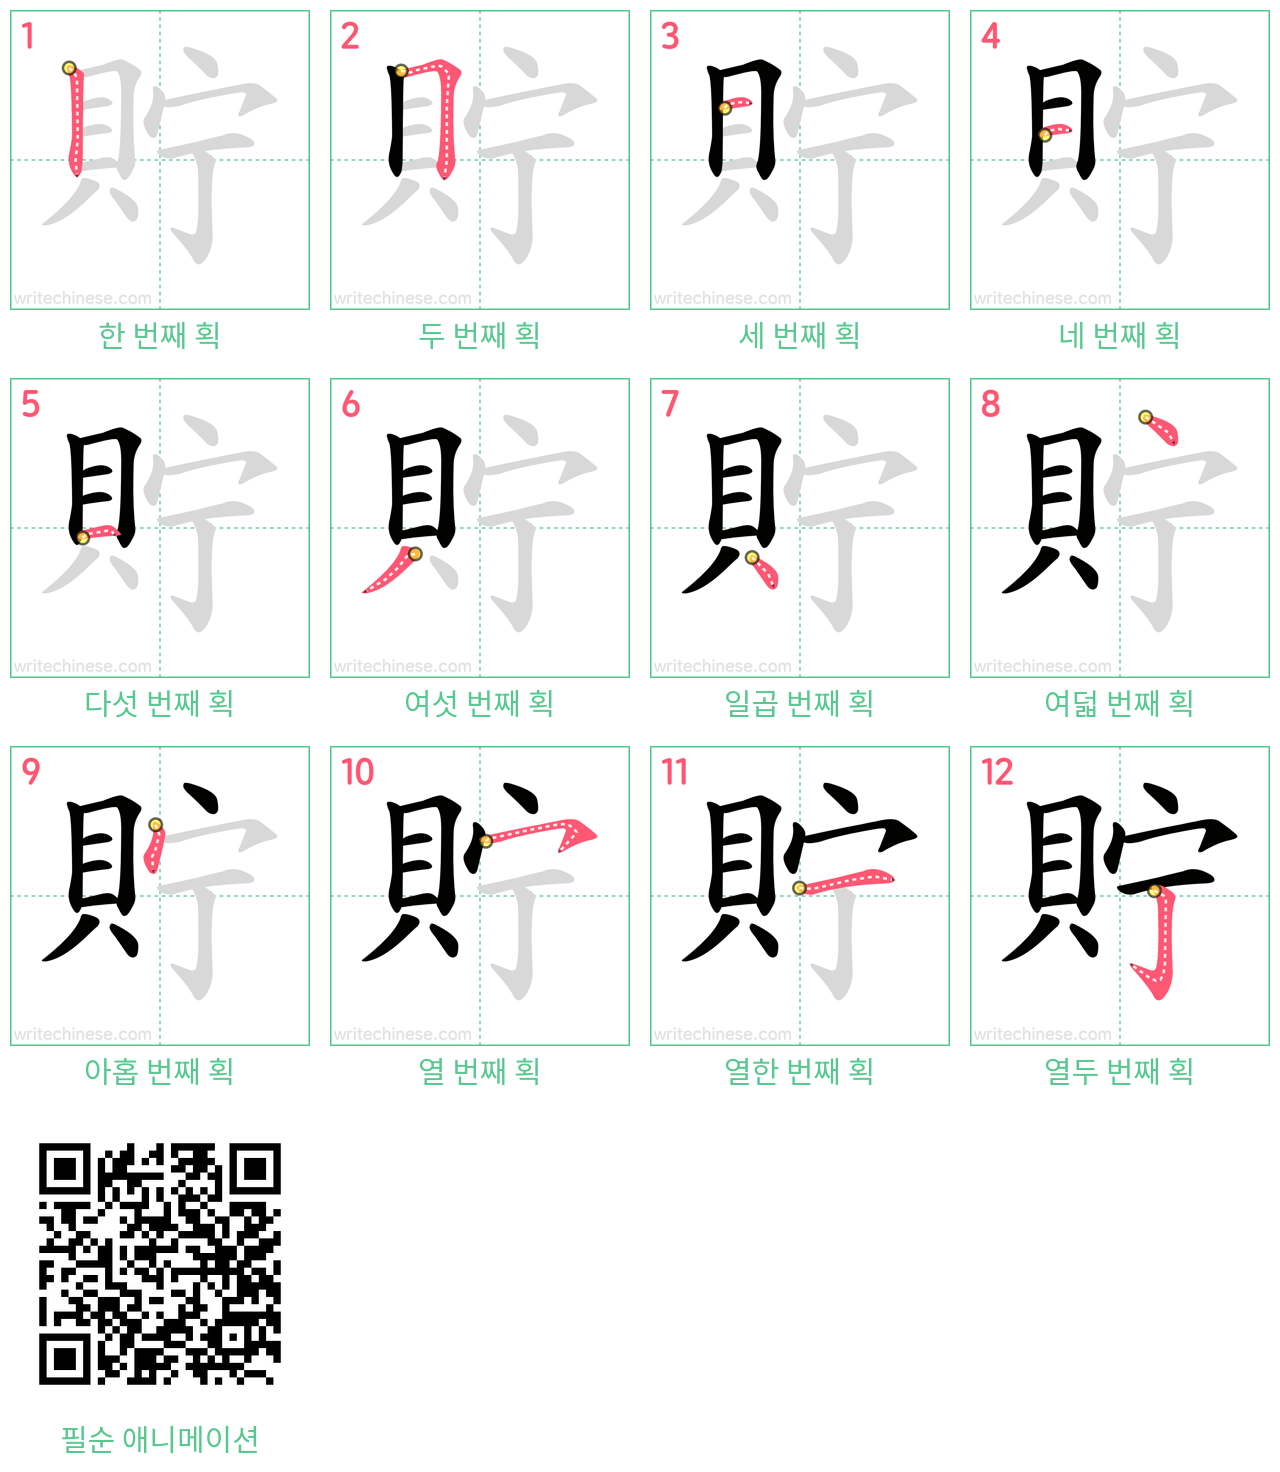 貯 step-by-step stroke order diagrams